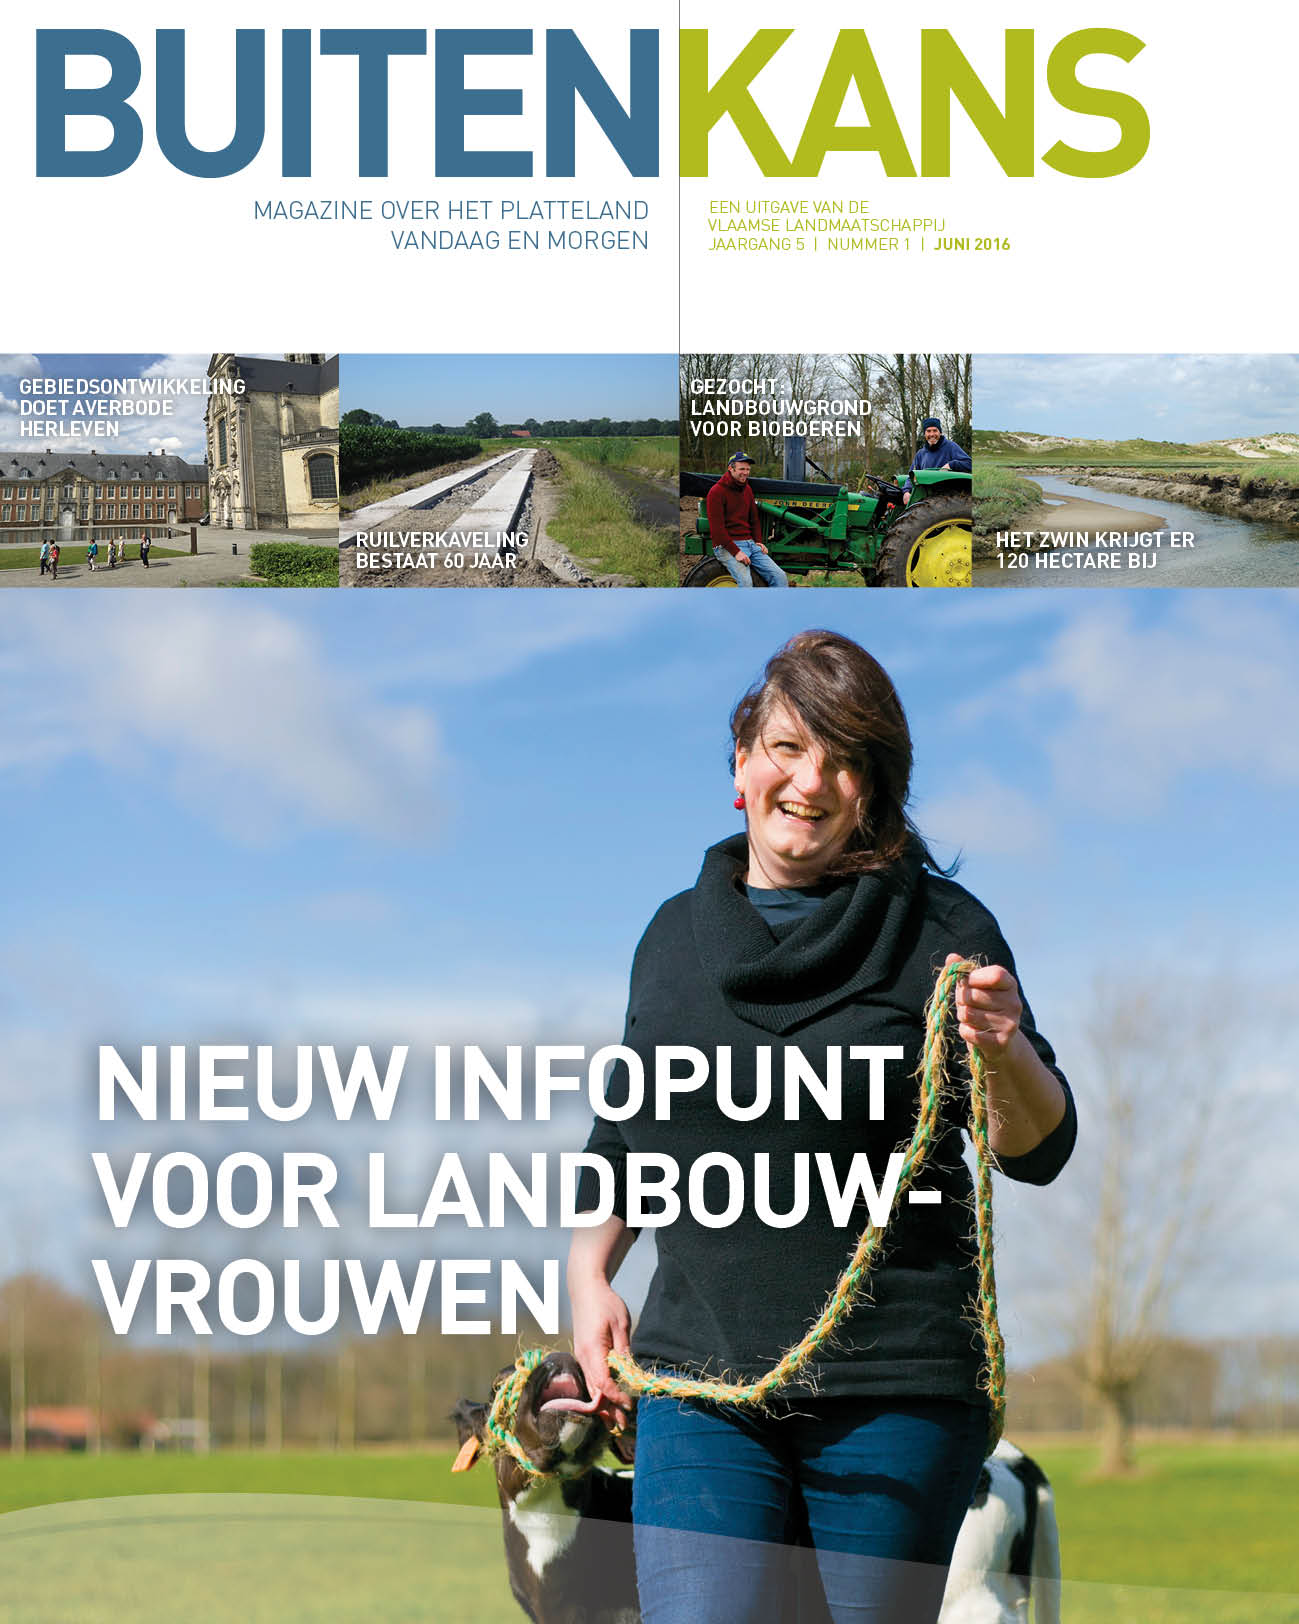 Cover Buitenkans nr. 11, landbouwvrouw met kalfje in de wei, kop: Nieuw infopunt voor landbouwvrouwen